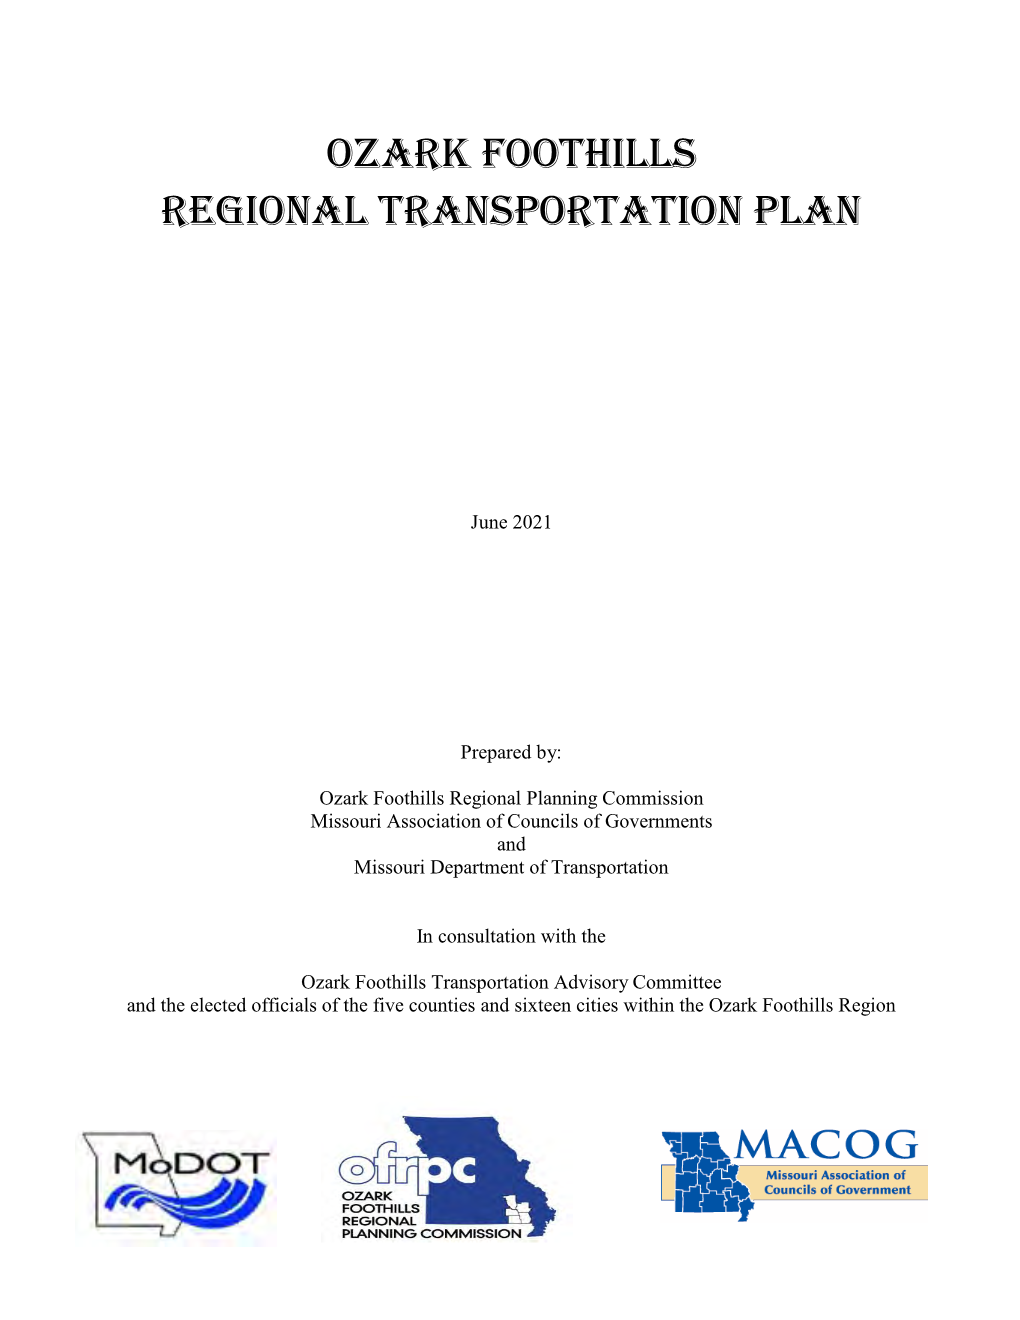 Regional Transportation Plan